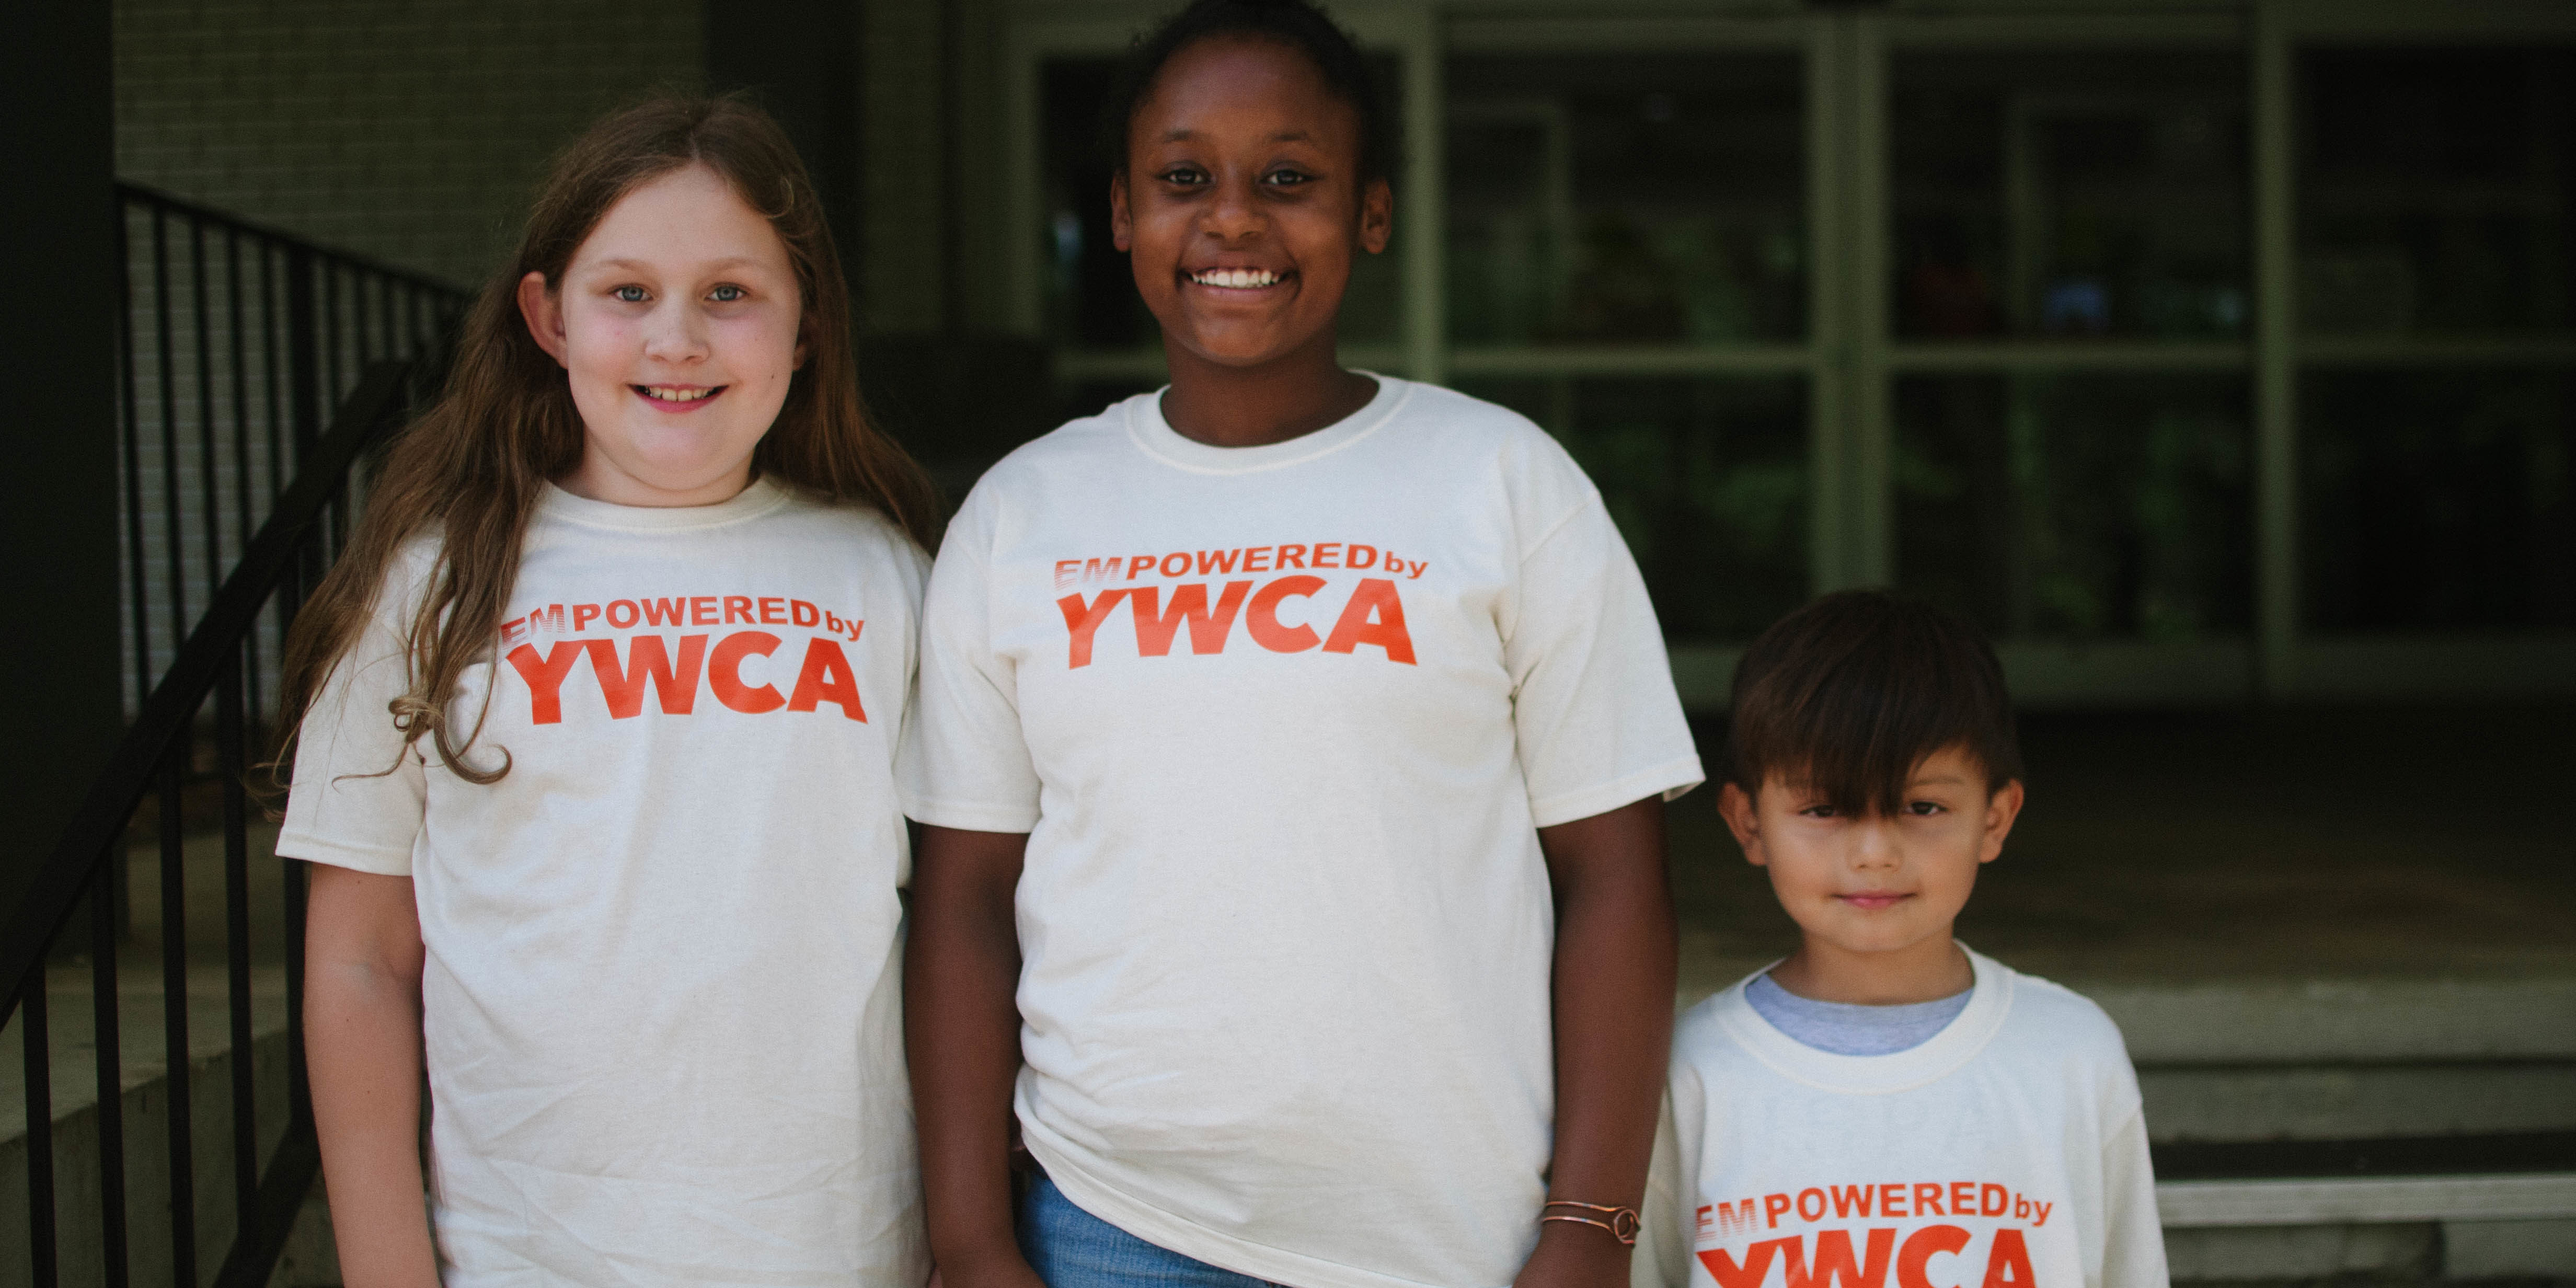 YWCA Central Carolinas